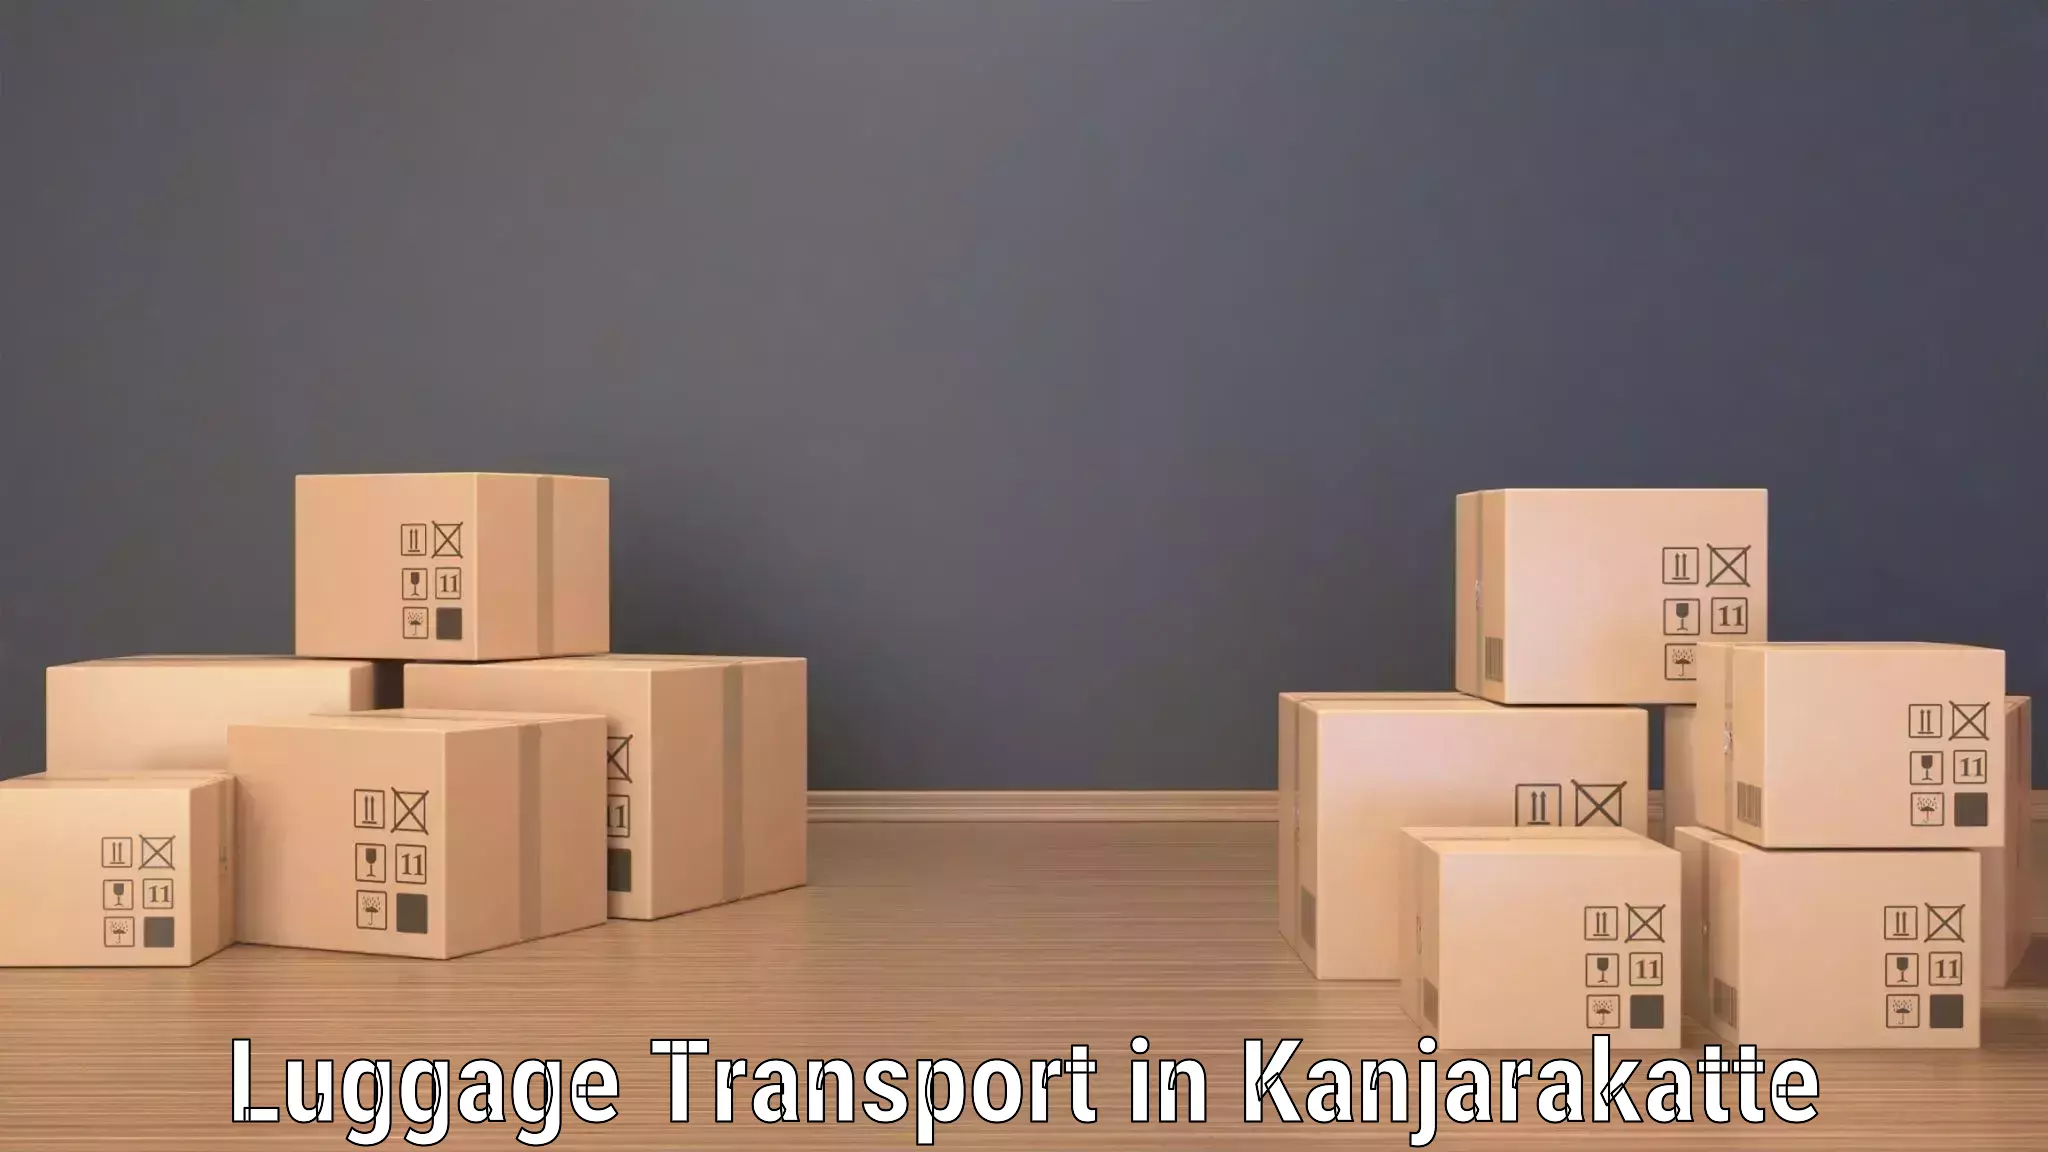 Luggage shipping trends in Kanjarakatte